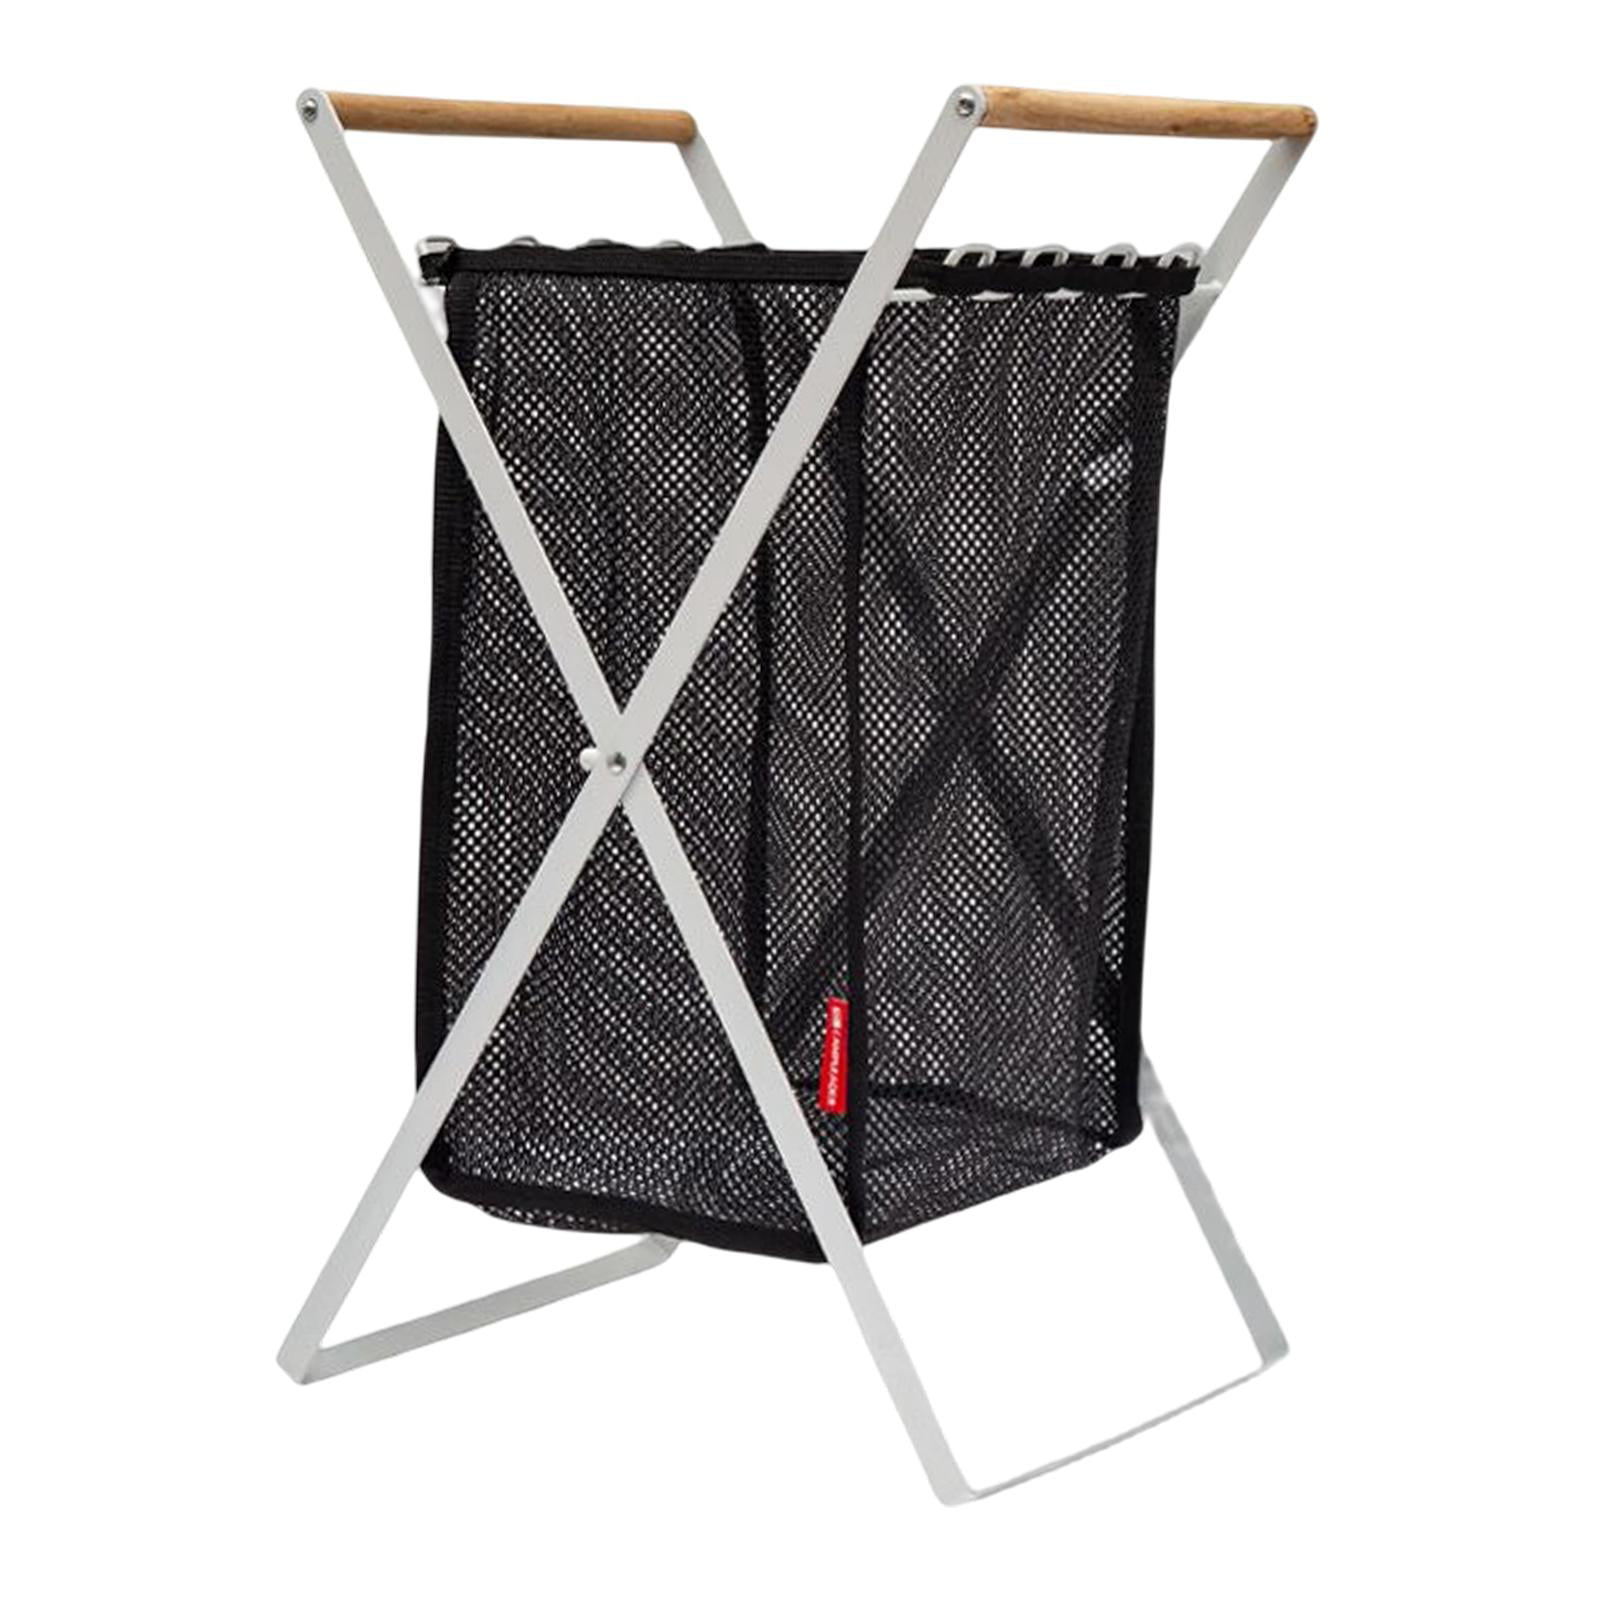 Folding Mesh Pop-up Clothes Laundry Hamper Basket with Storage Bag Holder Rack 